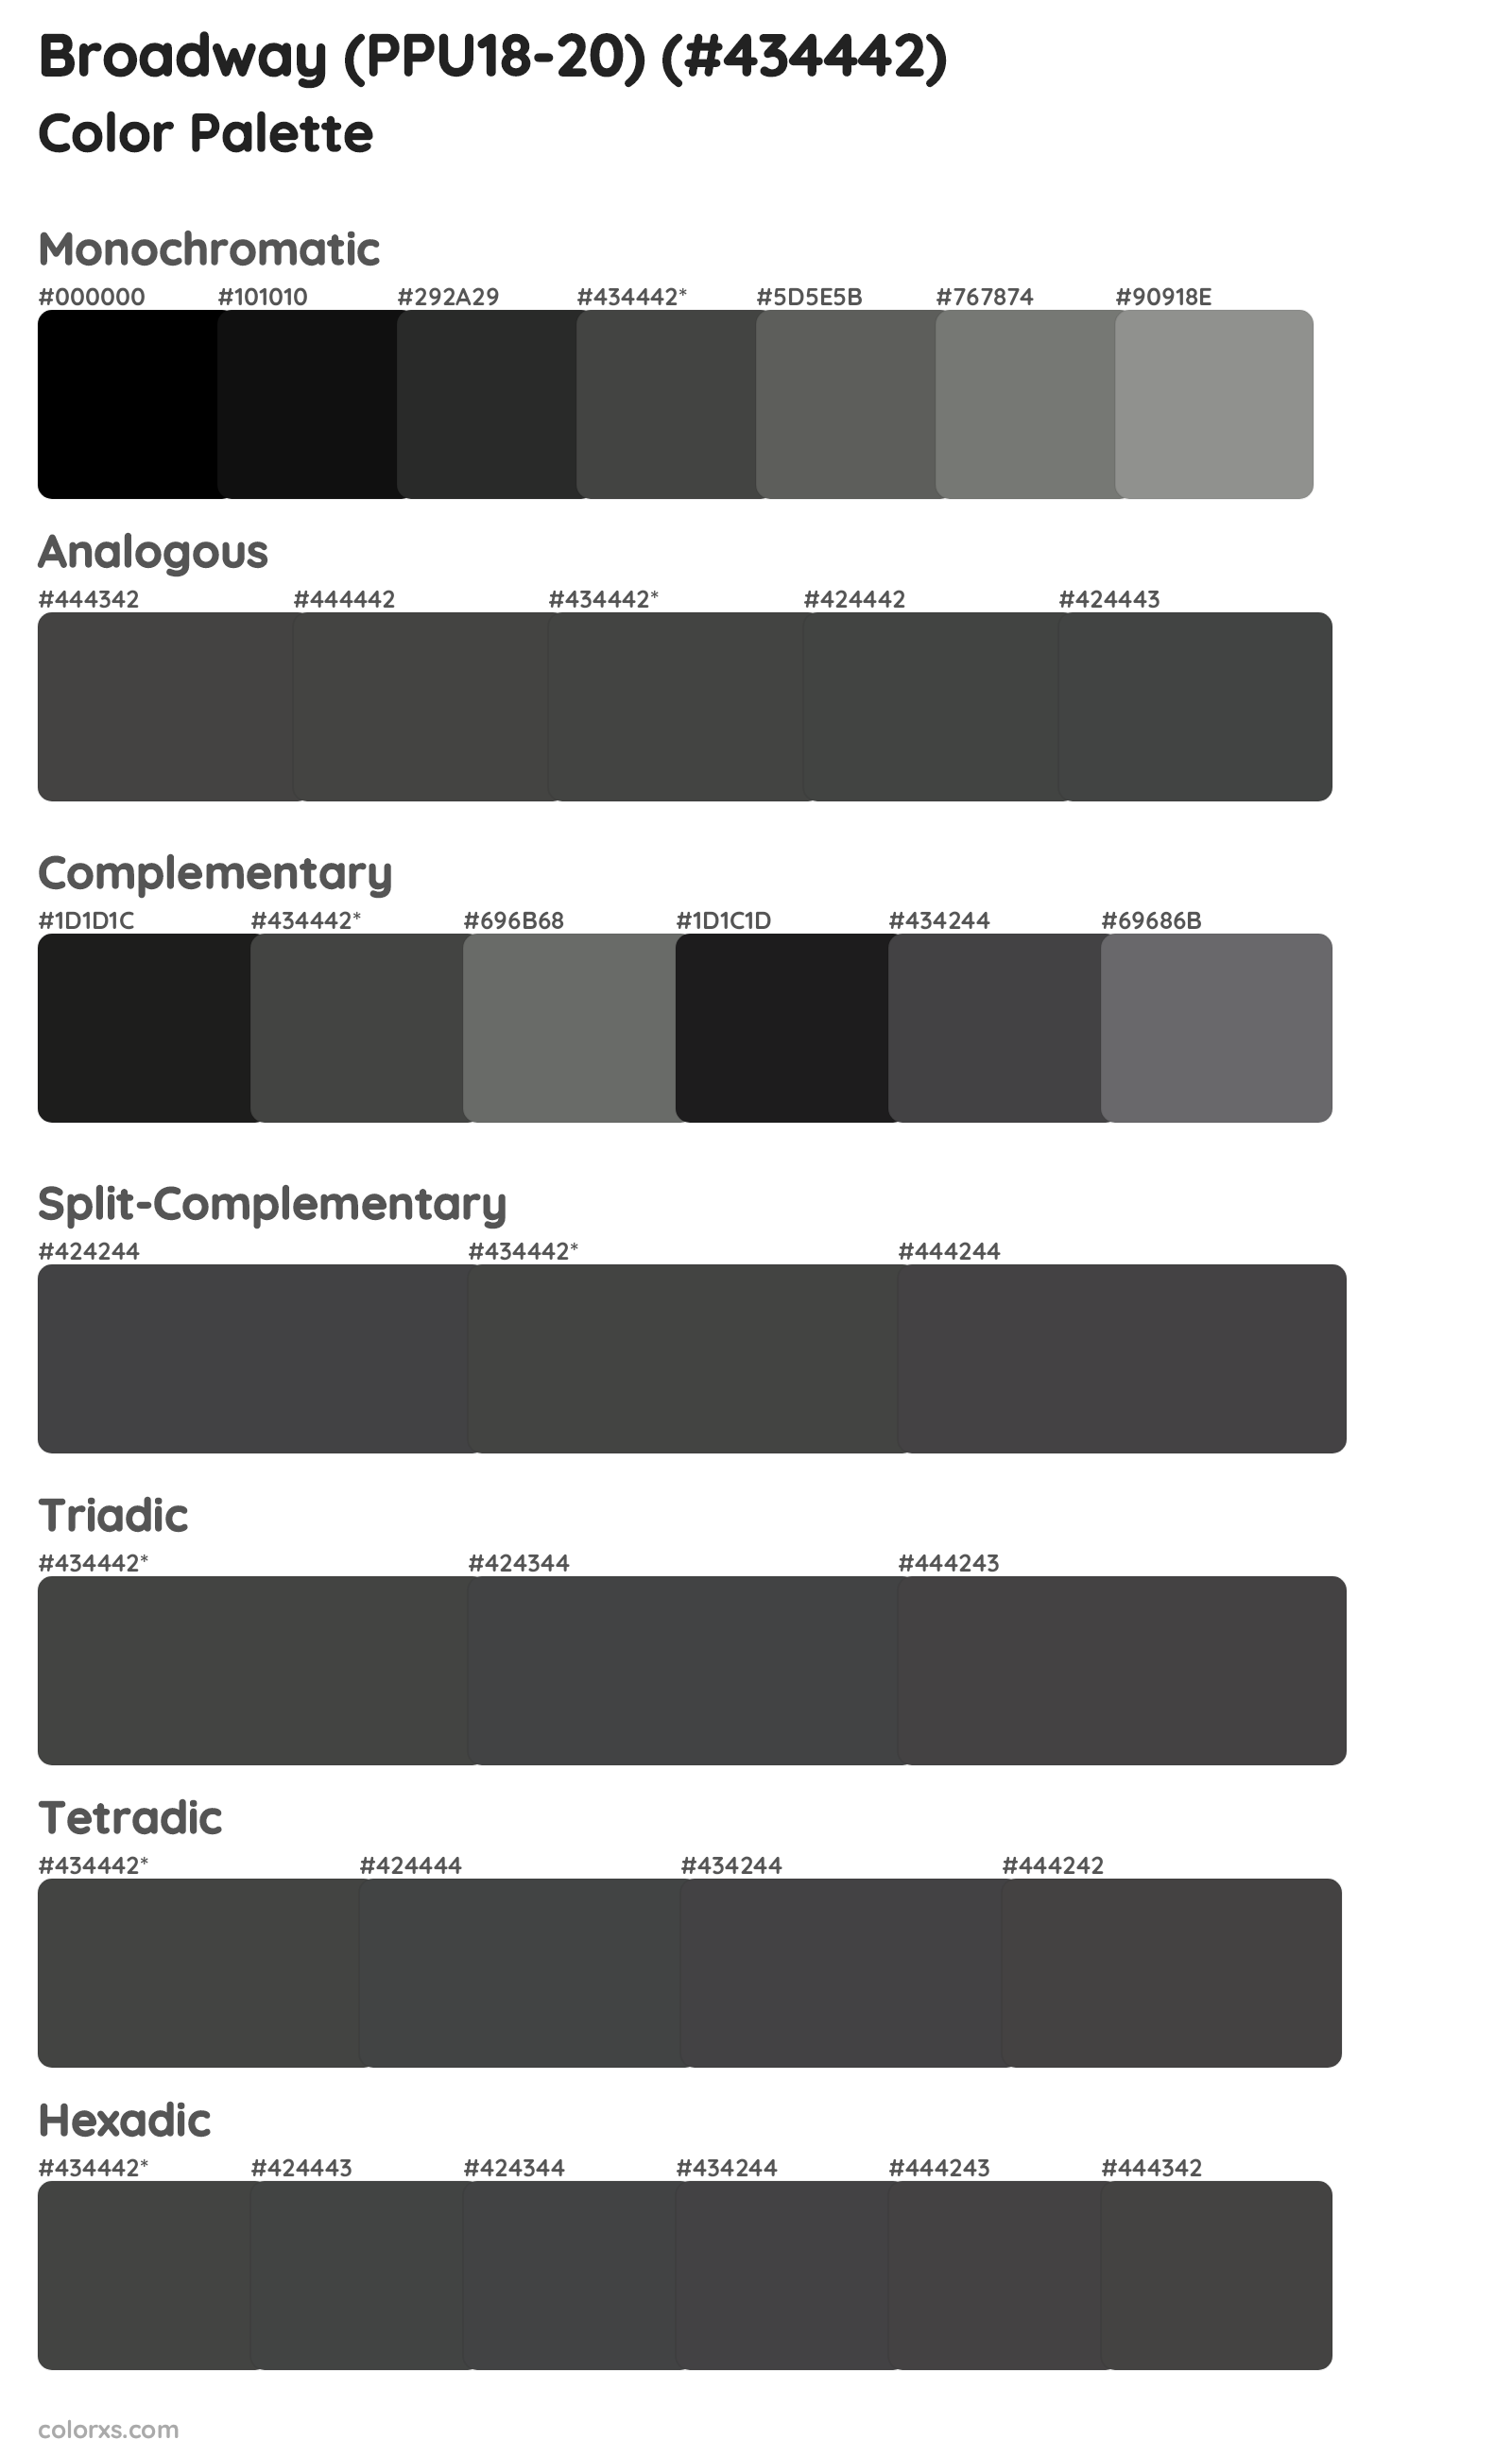 Broadway (PPU18-20) Color Scheme Palettes